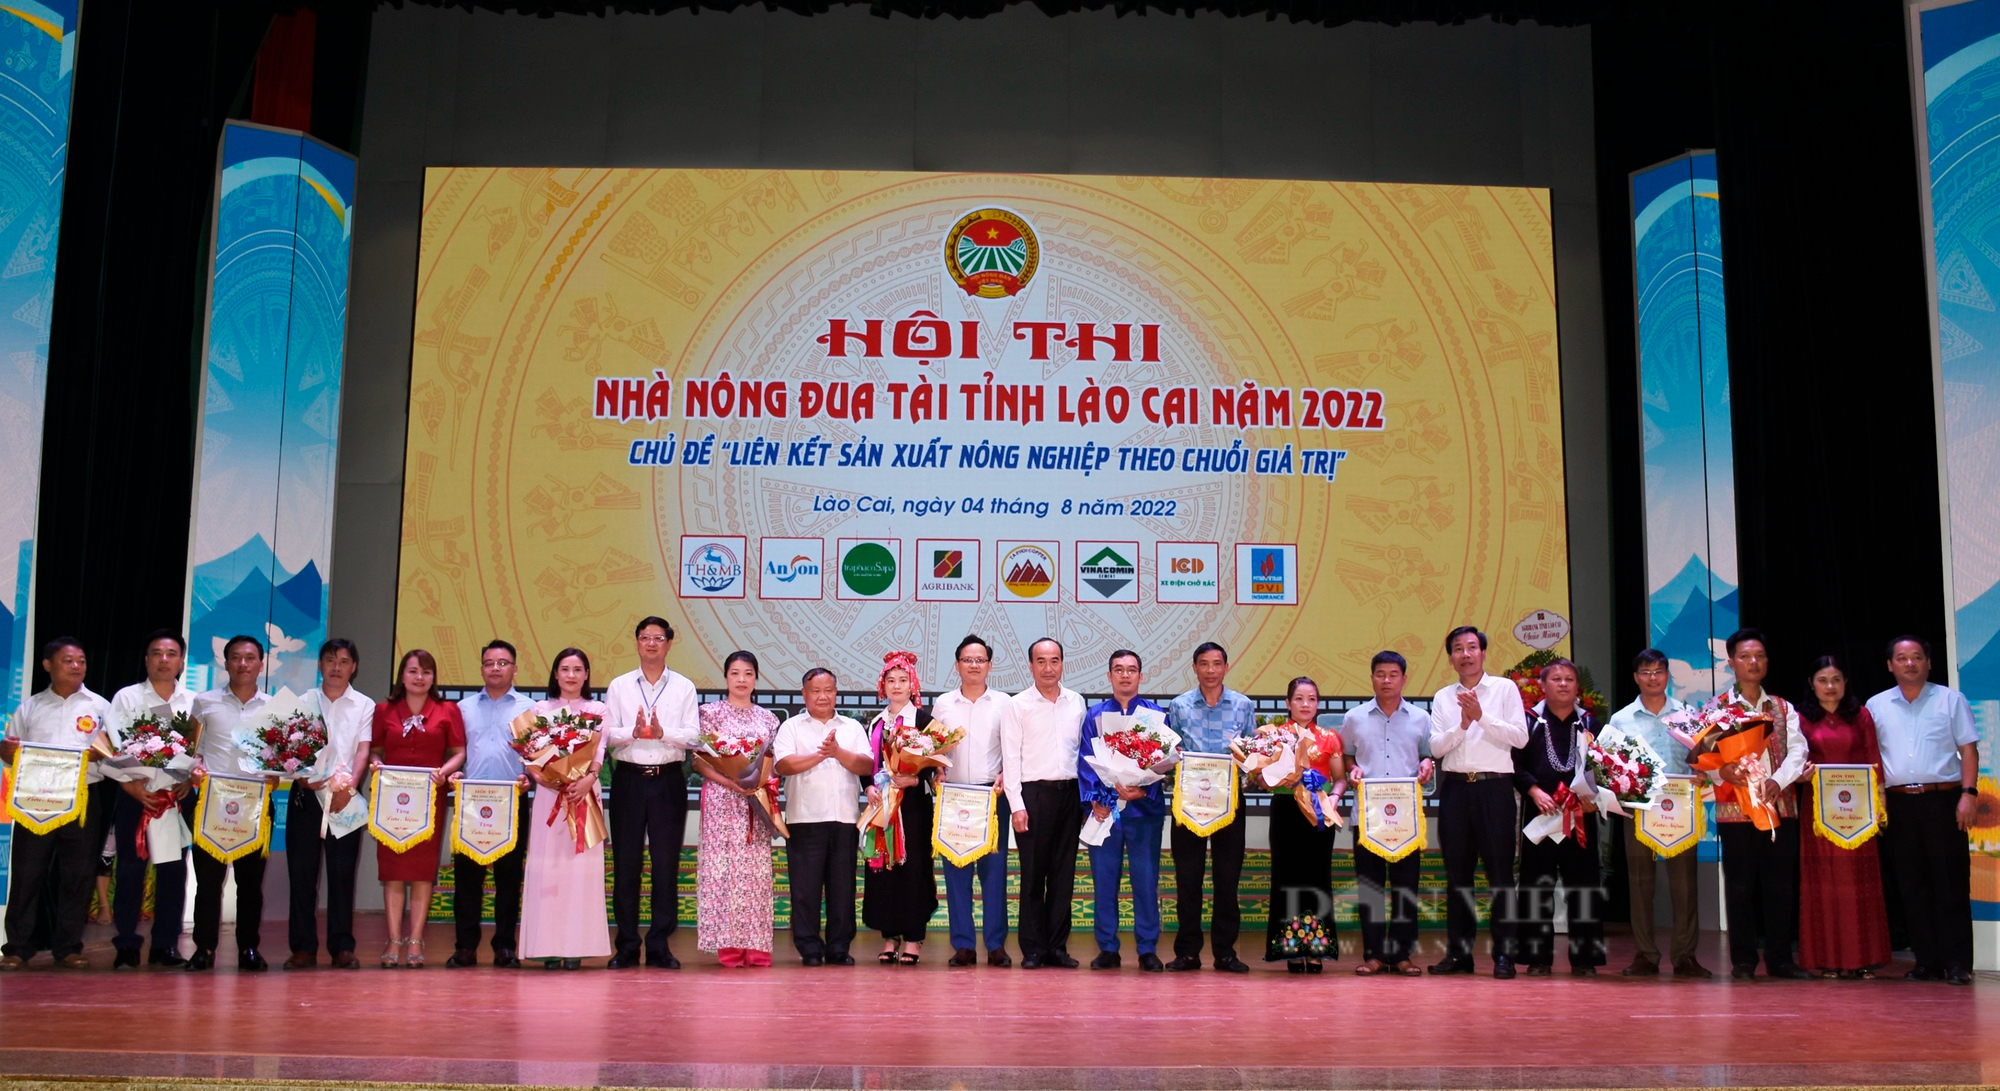 Chung kết Hội thi Nhà nông đua tài tỉnh Lào Cai năm 2022: Huyện Bắc Hà đạt giải Nhất - Ảnh 5.